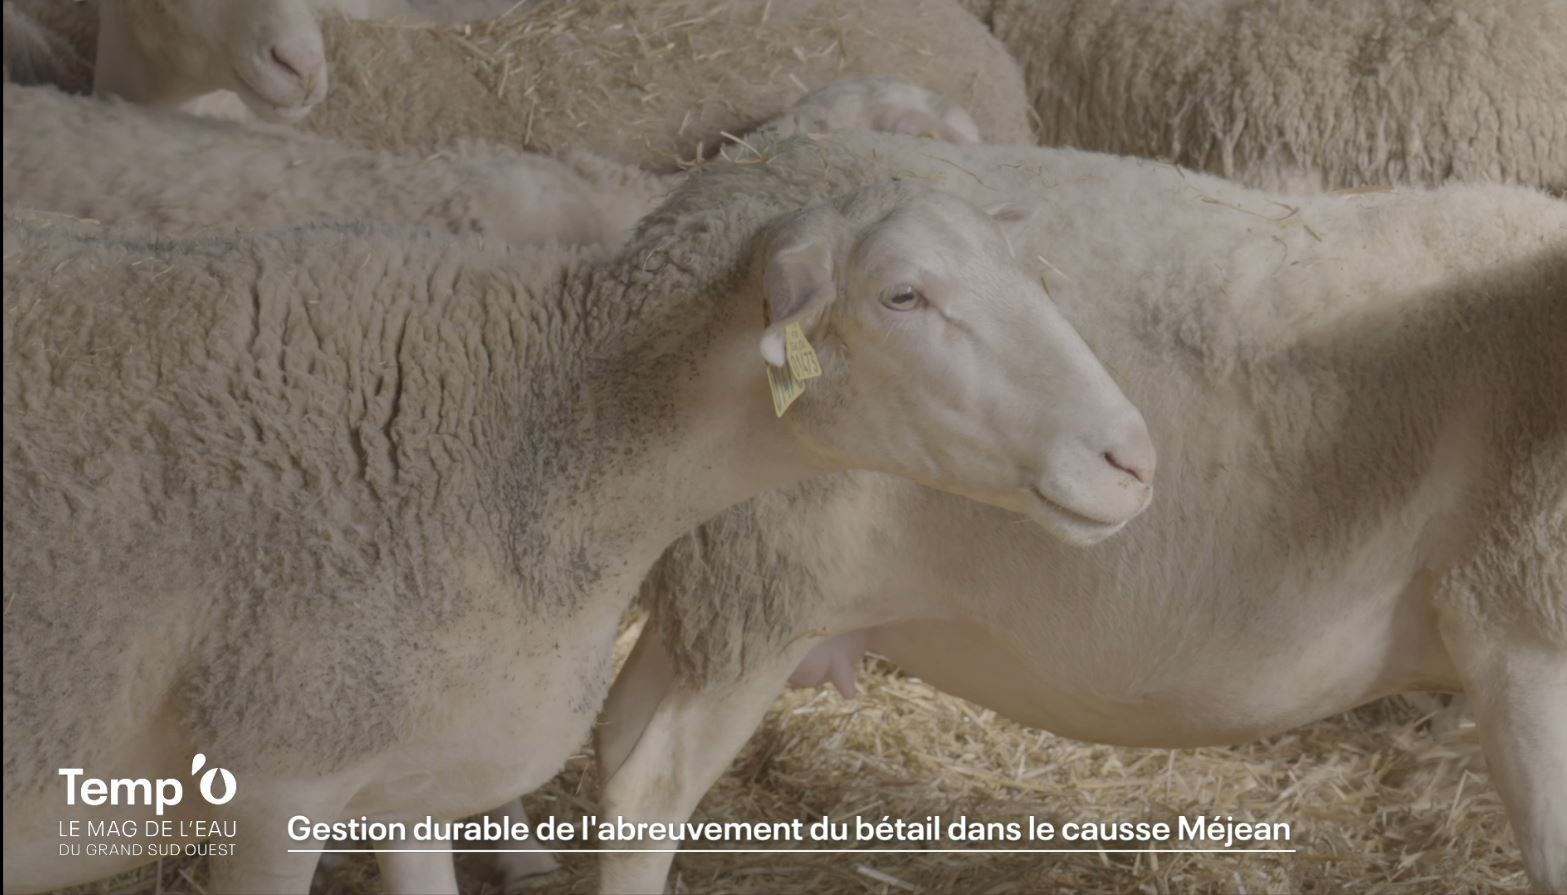 Afficher la vidéo Reportage - La gestion durable de l'abreuvement du bétail dans le causse Méjean